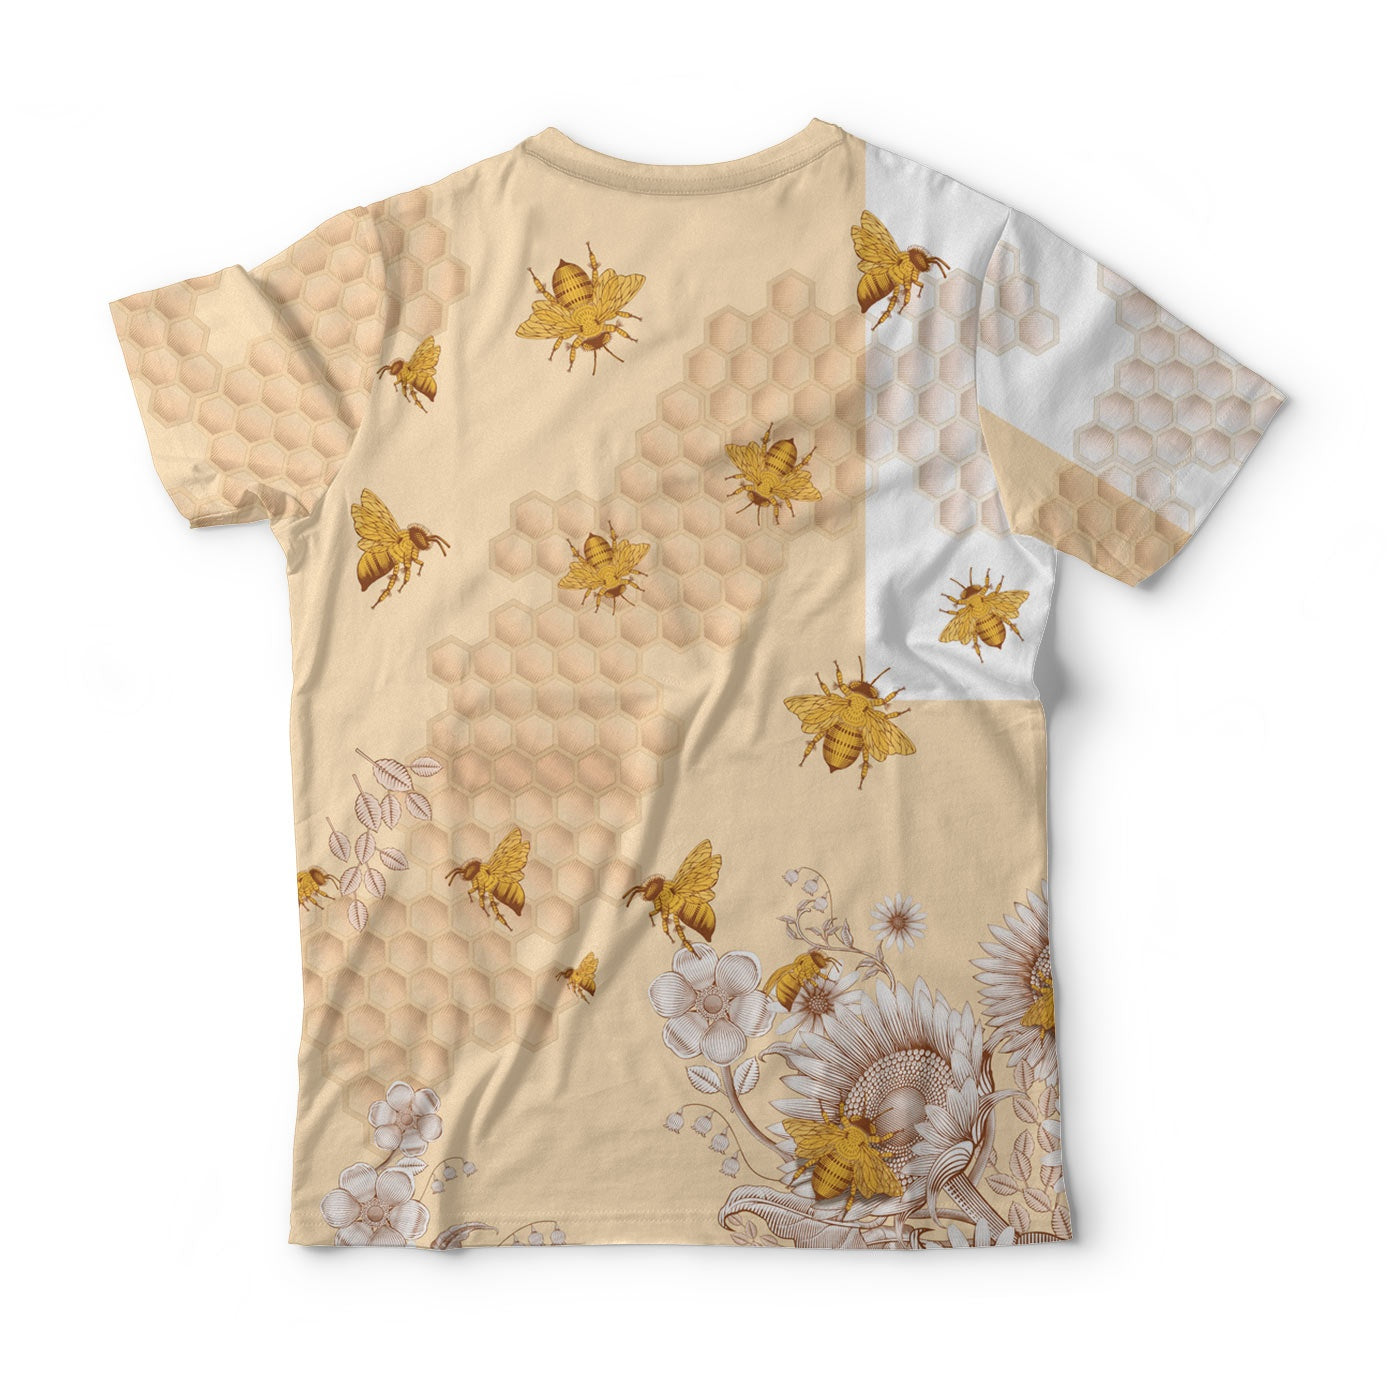 Sunflower Bee T-Shirt